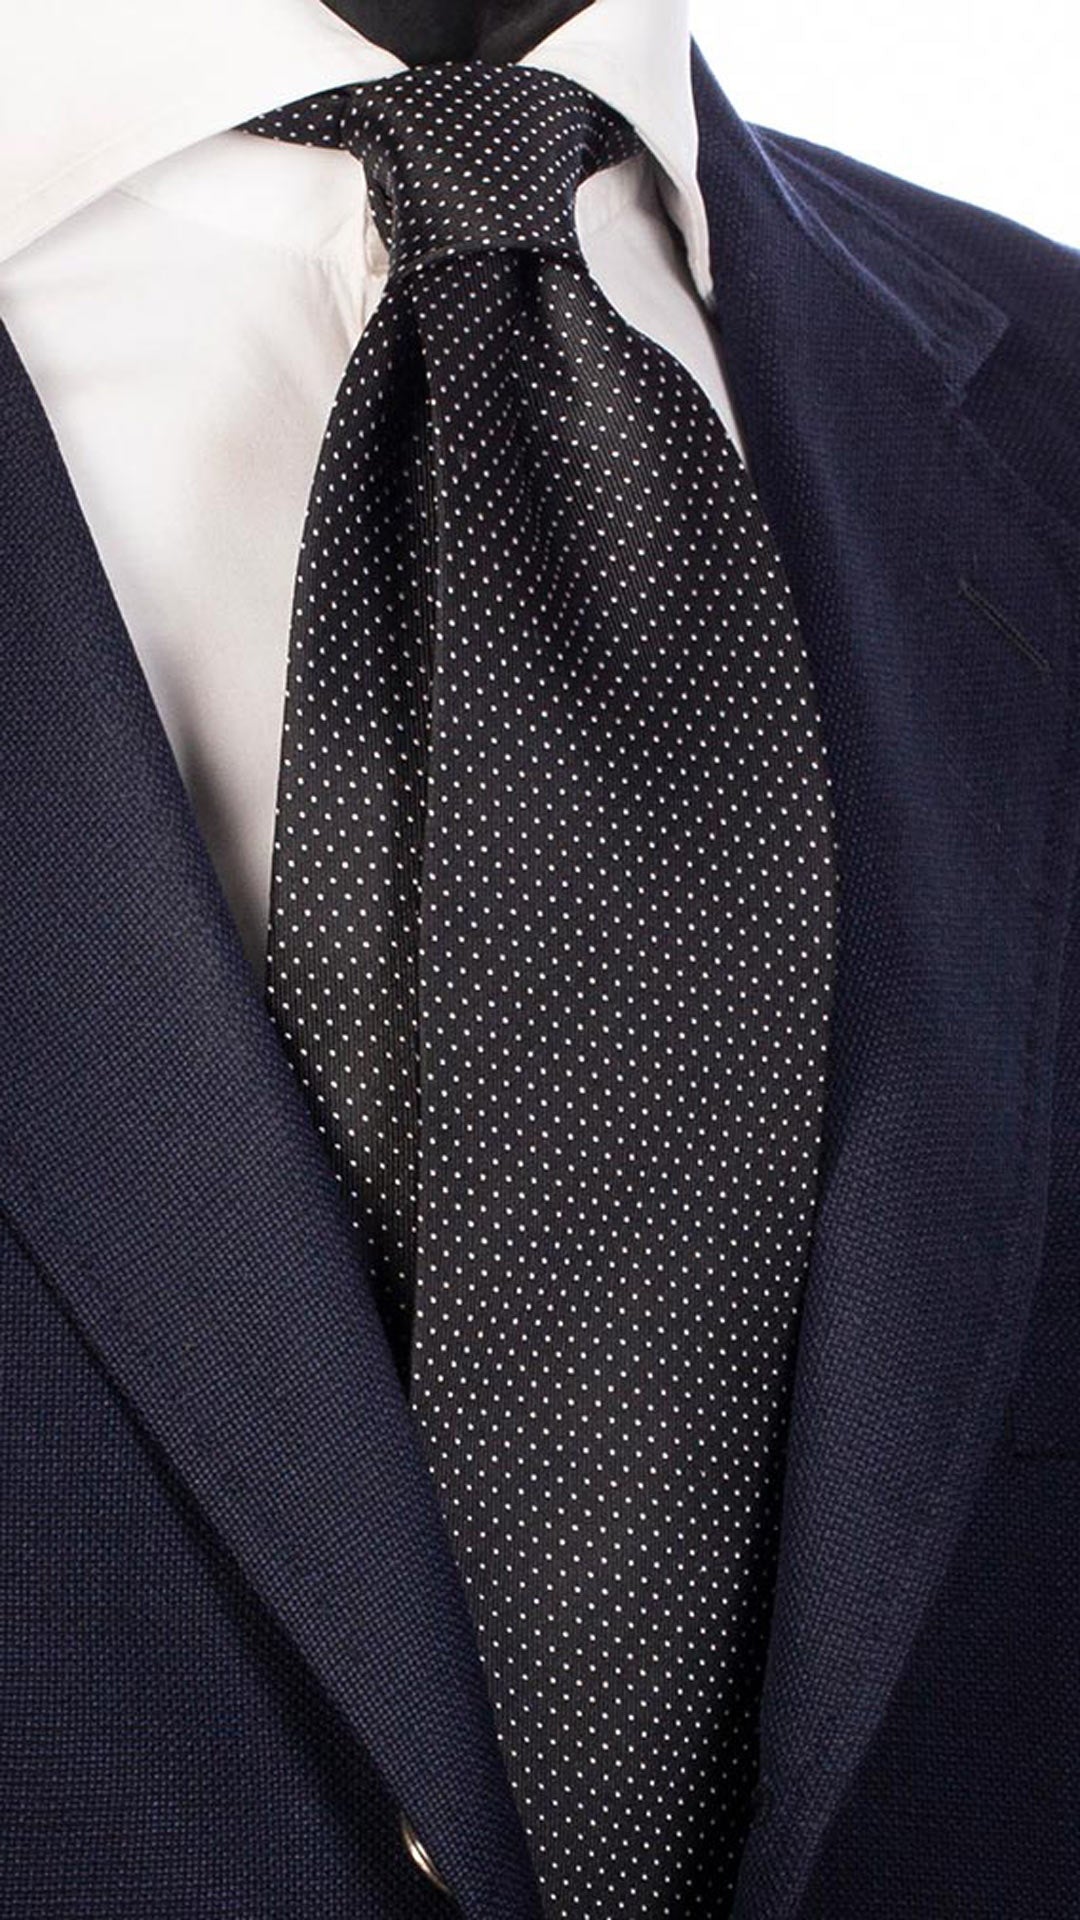 Cravatta da Cerimonia di Seta Nera Punto a Spillo Bianco CY4703 Made in Italy Graffeo Cravatte